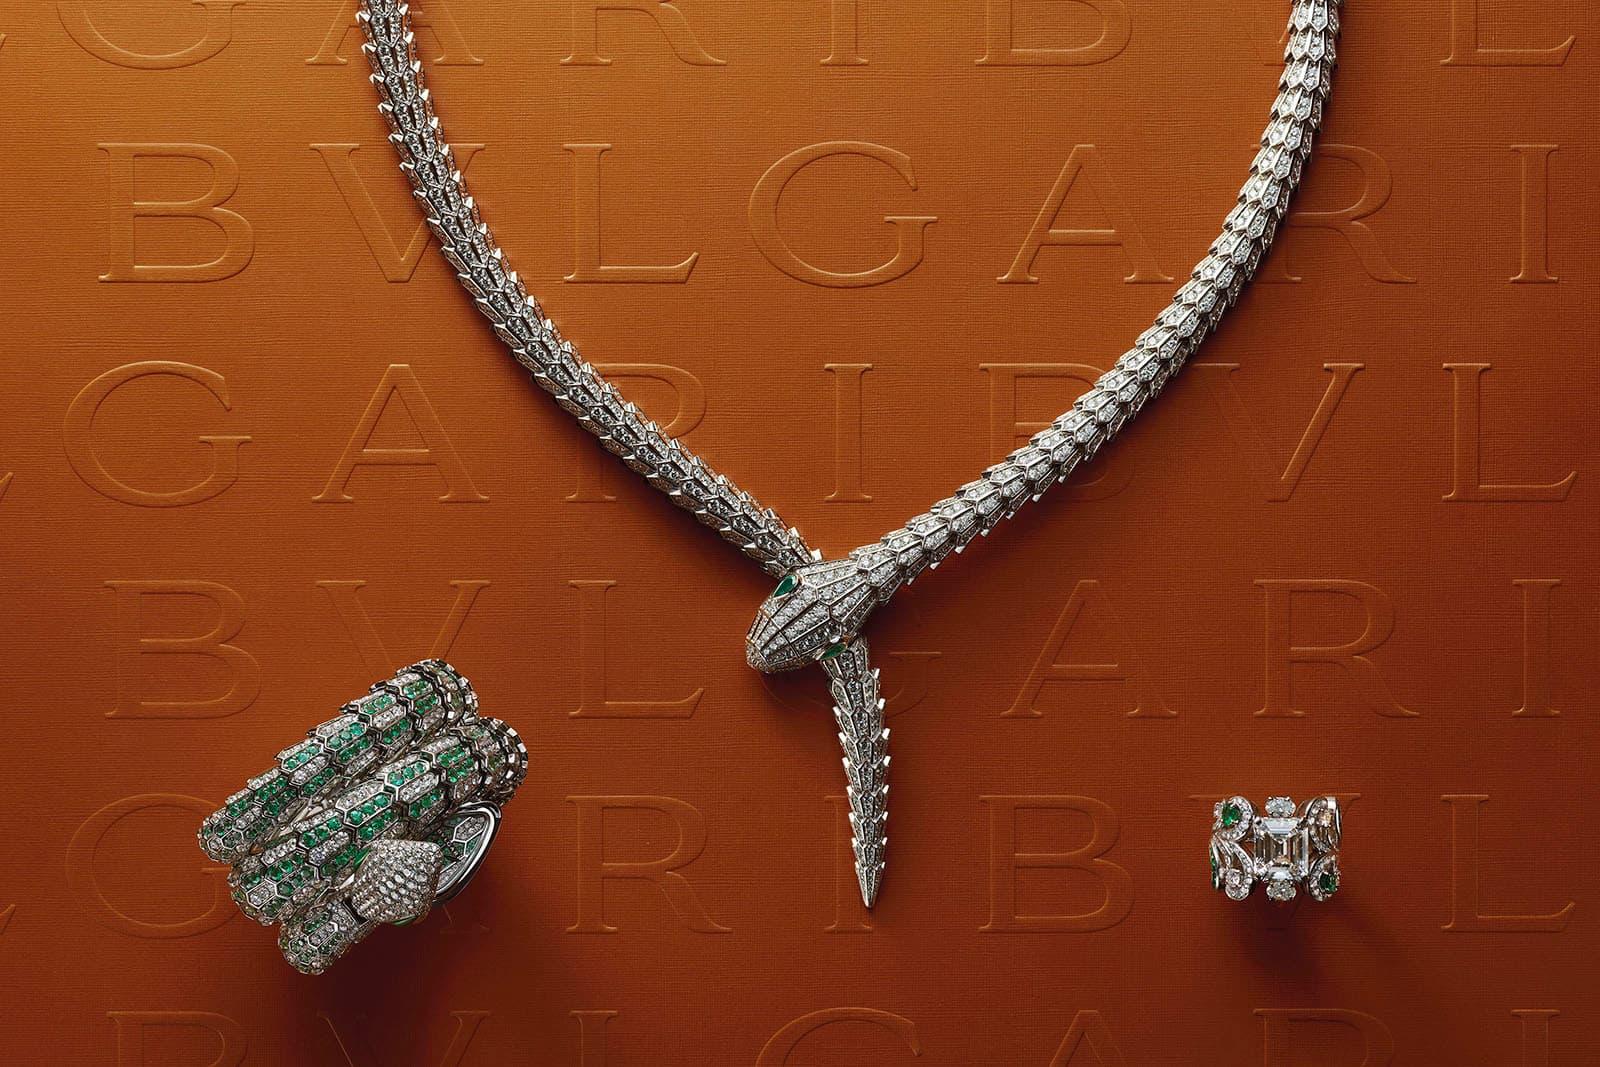 Bulgari Barocko High Jewelry Campaign